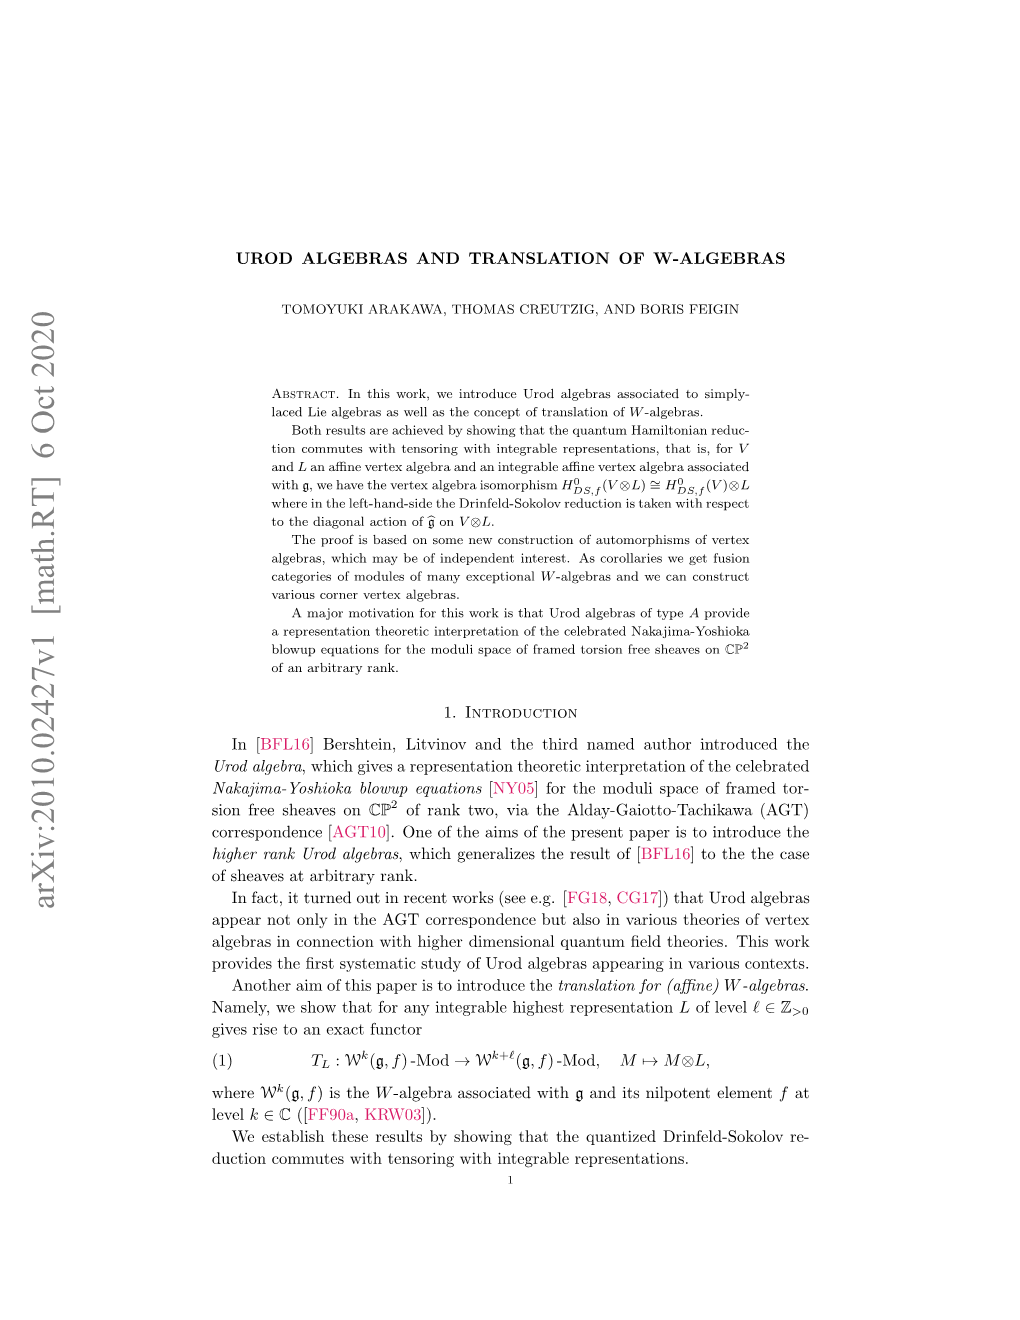 Urod Algebras and Translation of W-Algebras